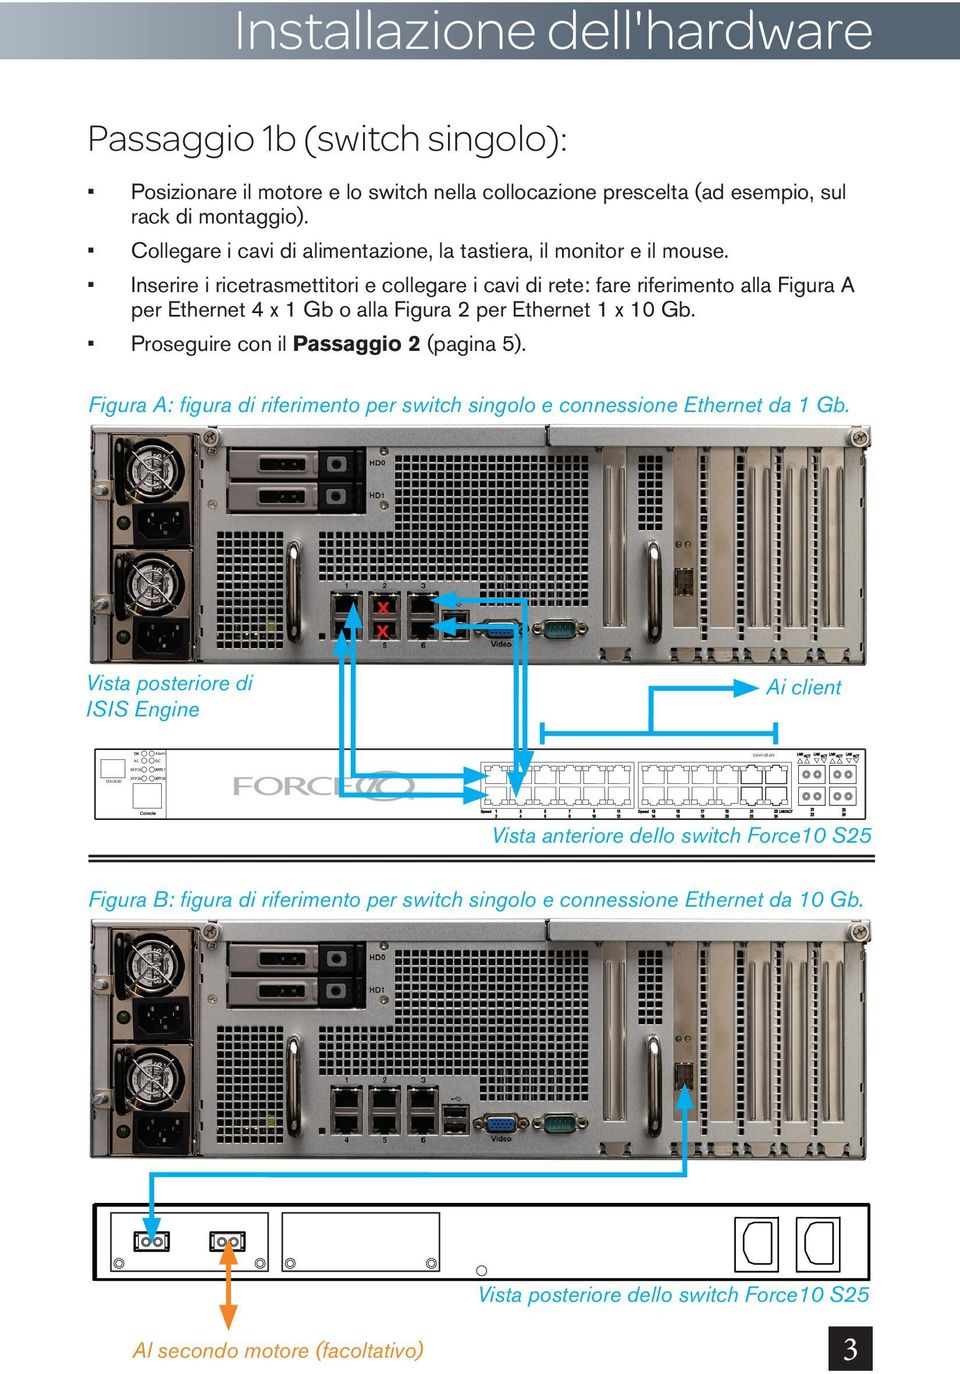 Inserire i ricetrasmettitori e collegare i cavi di rete: fare riferimento alla Figura A per Ethernet 4 x 1 Gb o alla Figura 2 per Ethernet 1 x 10 Gb. Proseguire con il Passaggio 2 (pagina 5).